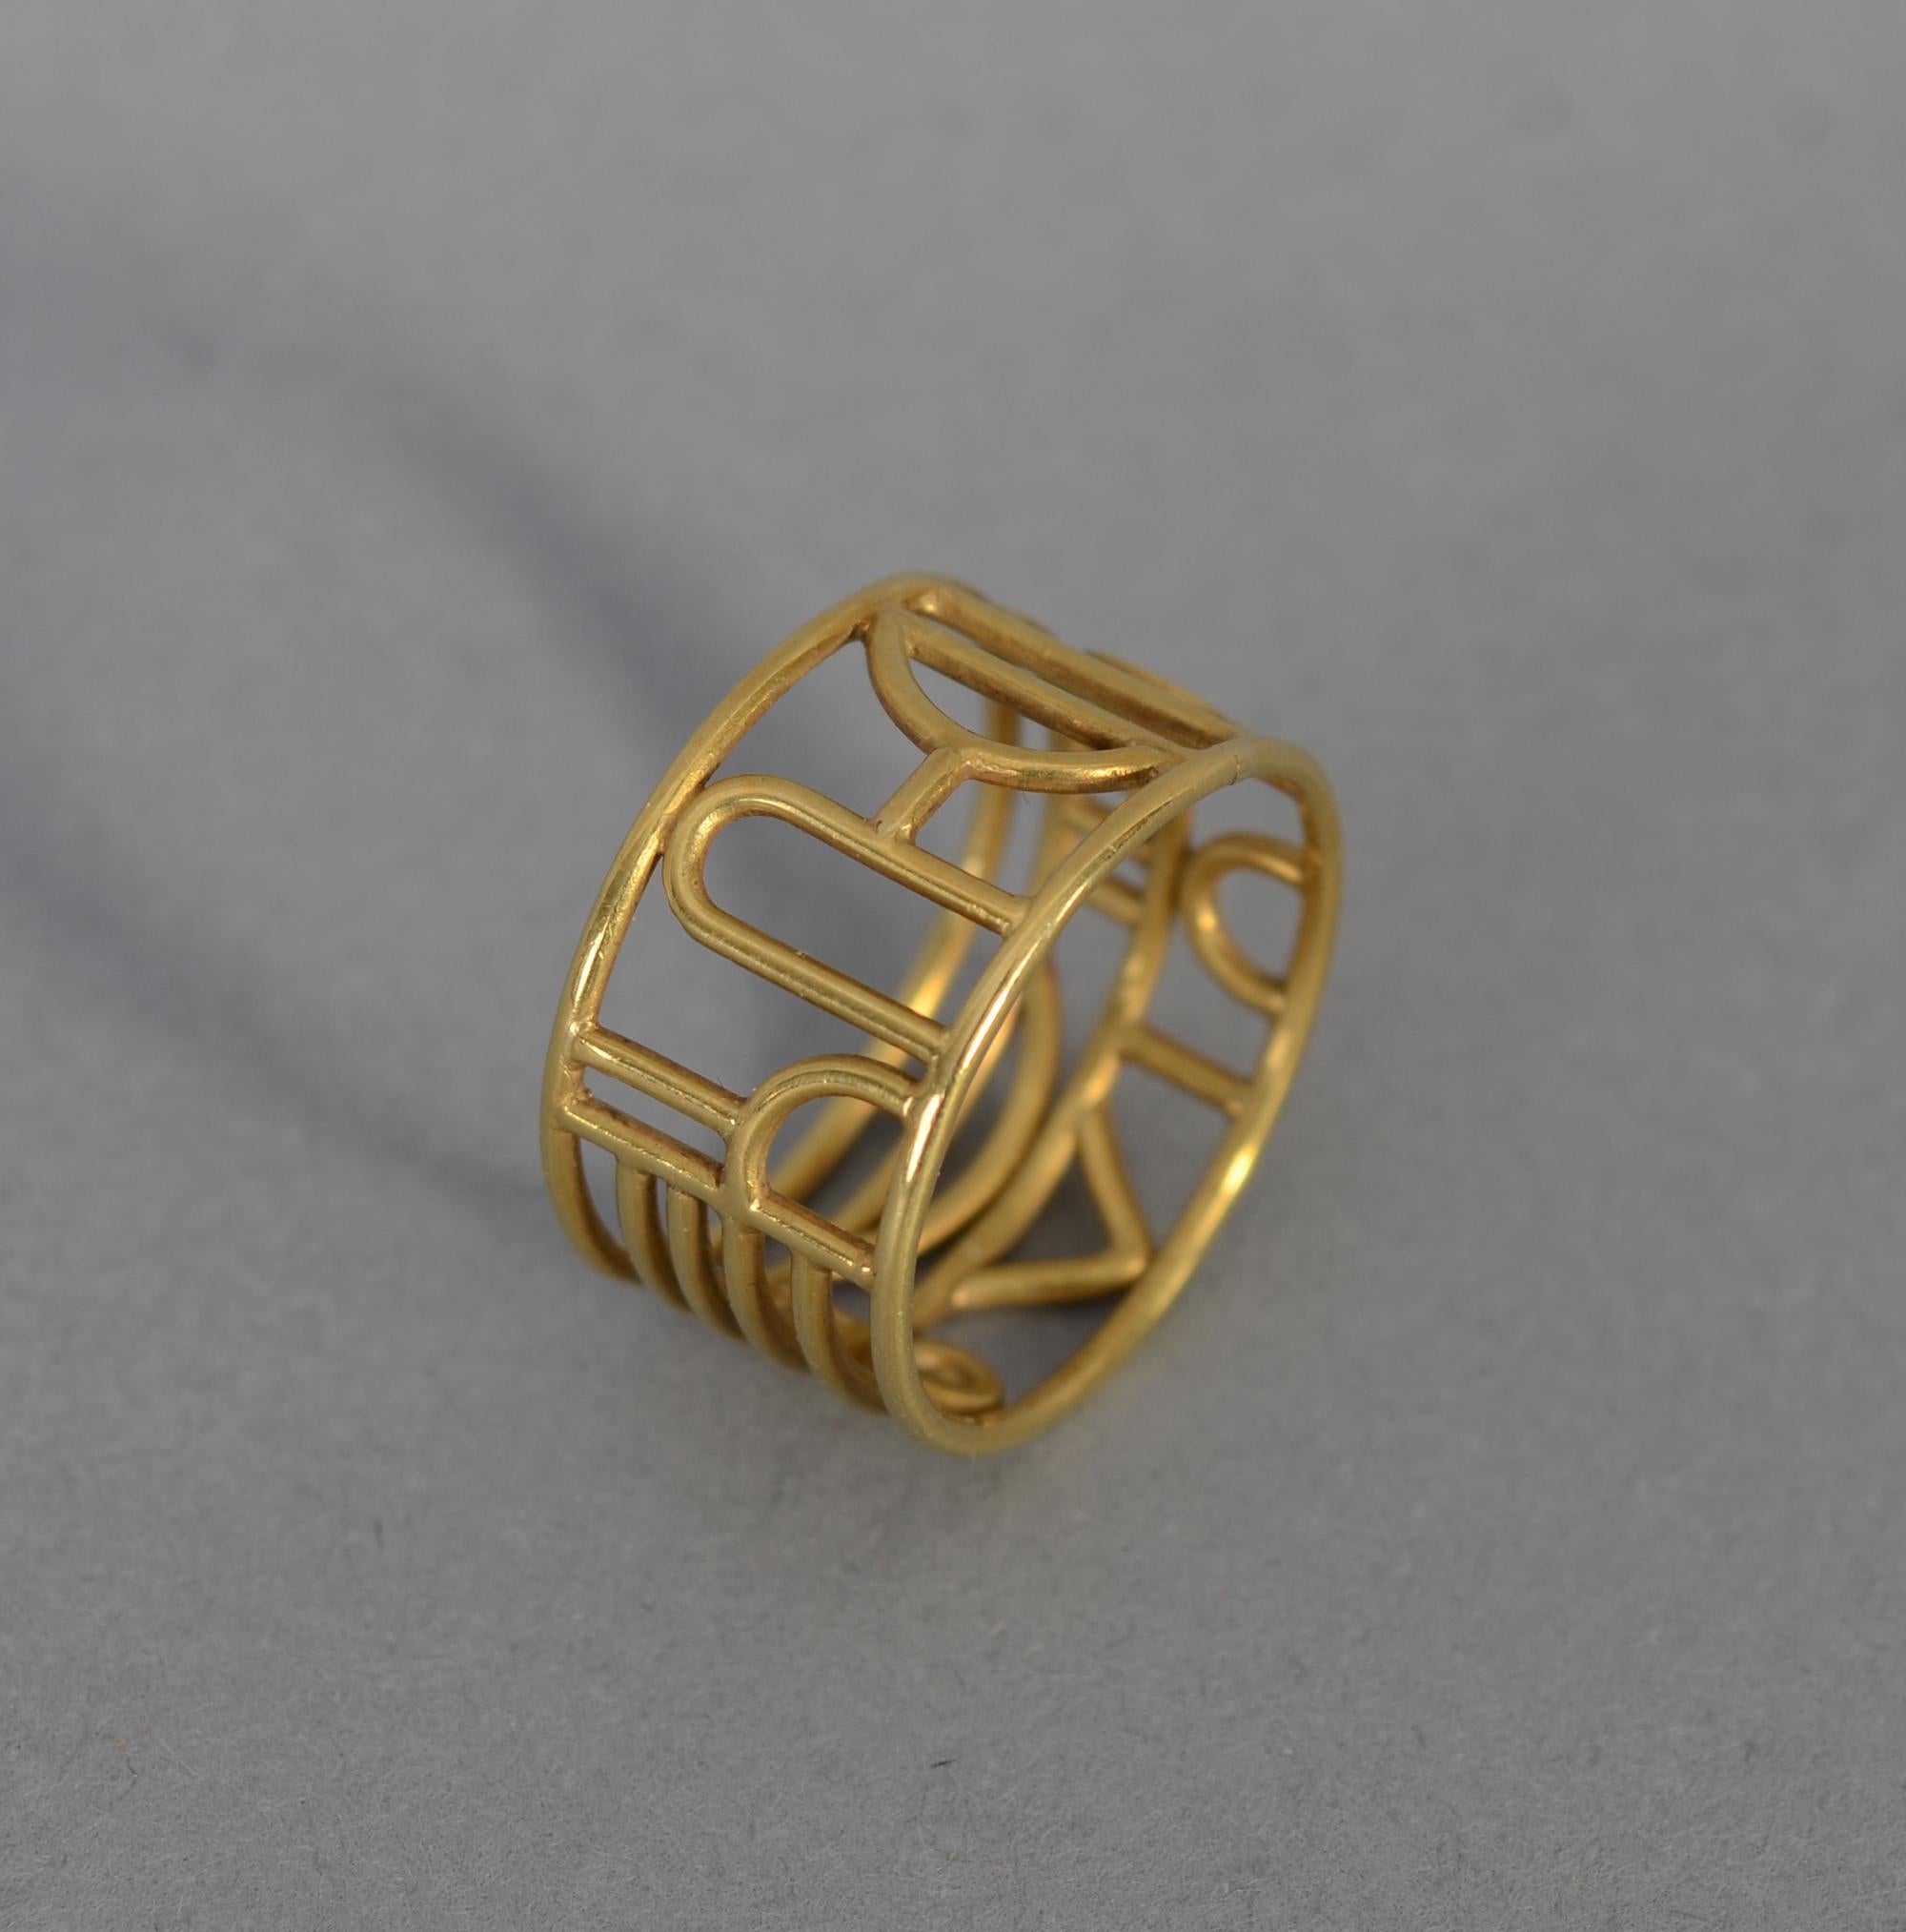 wendy ramshaw gold ear pendants